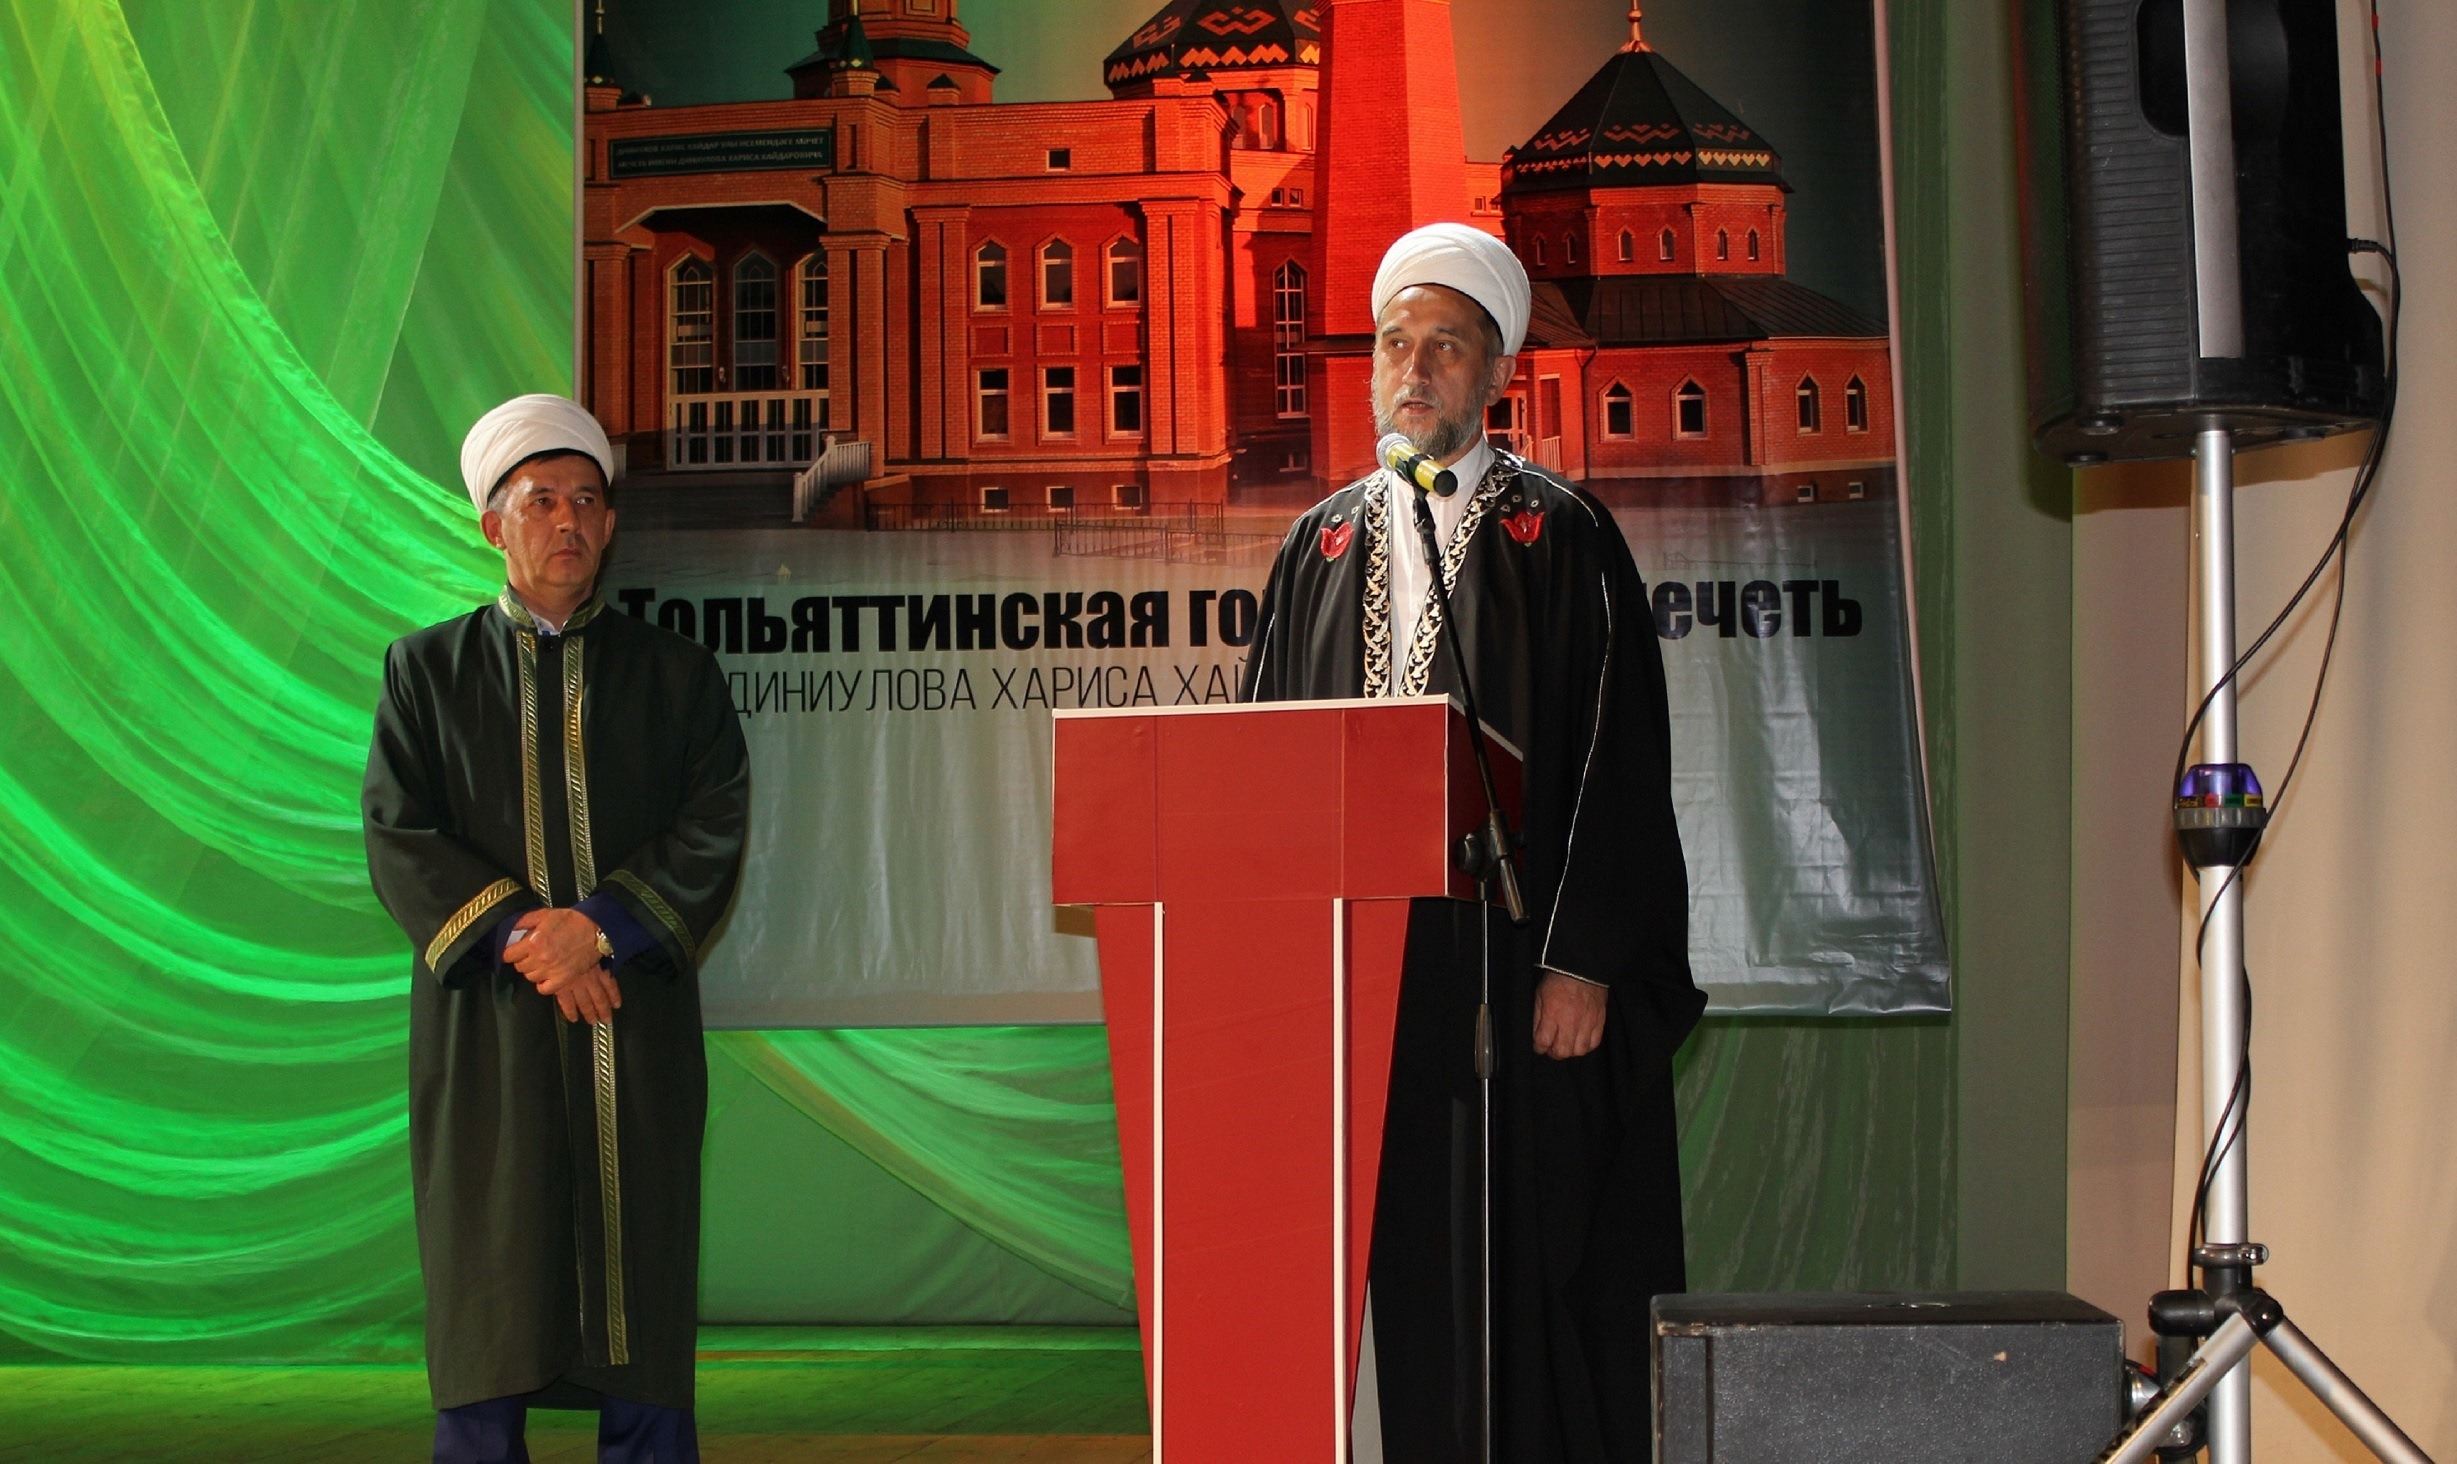 С юбилеем Тольяттинской Соборной мечети мусульман поздравили представители разных конфессий